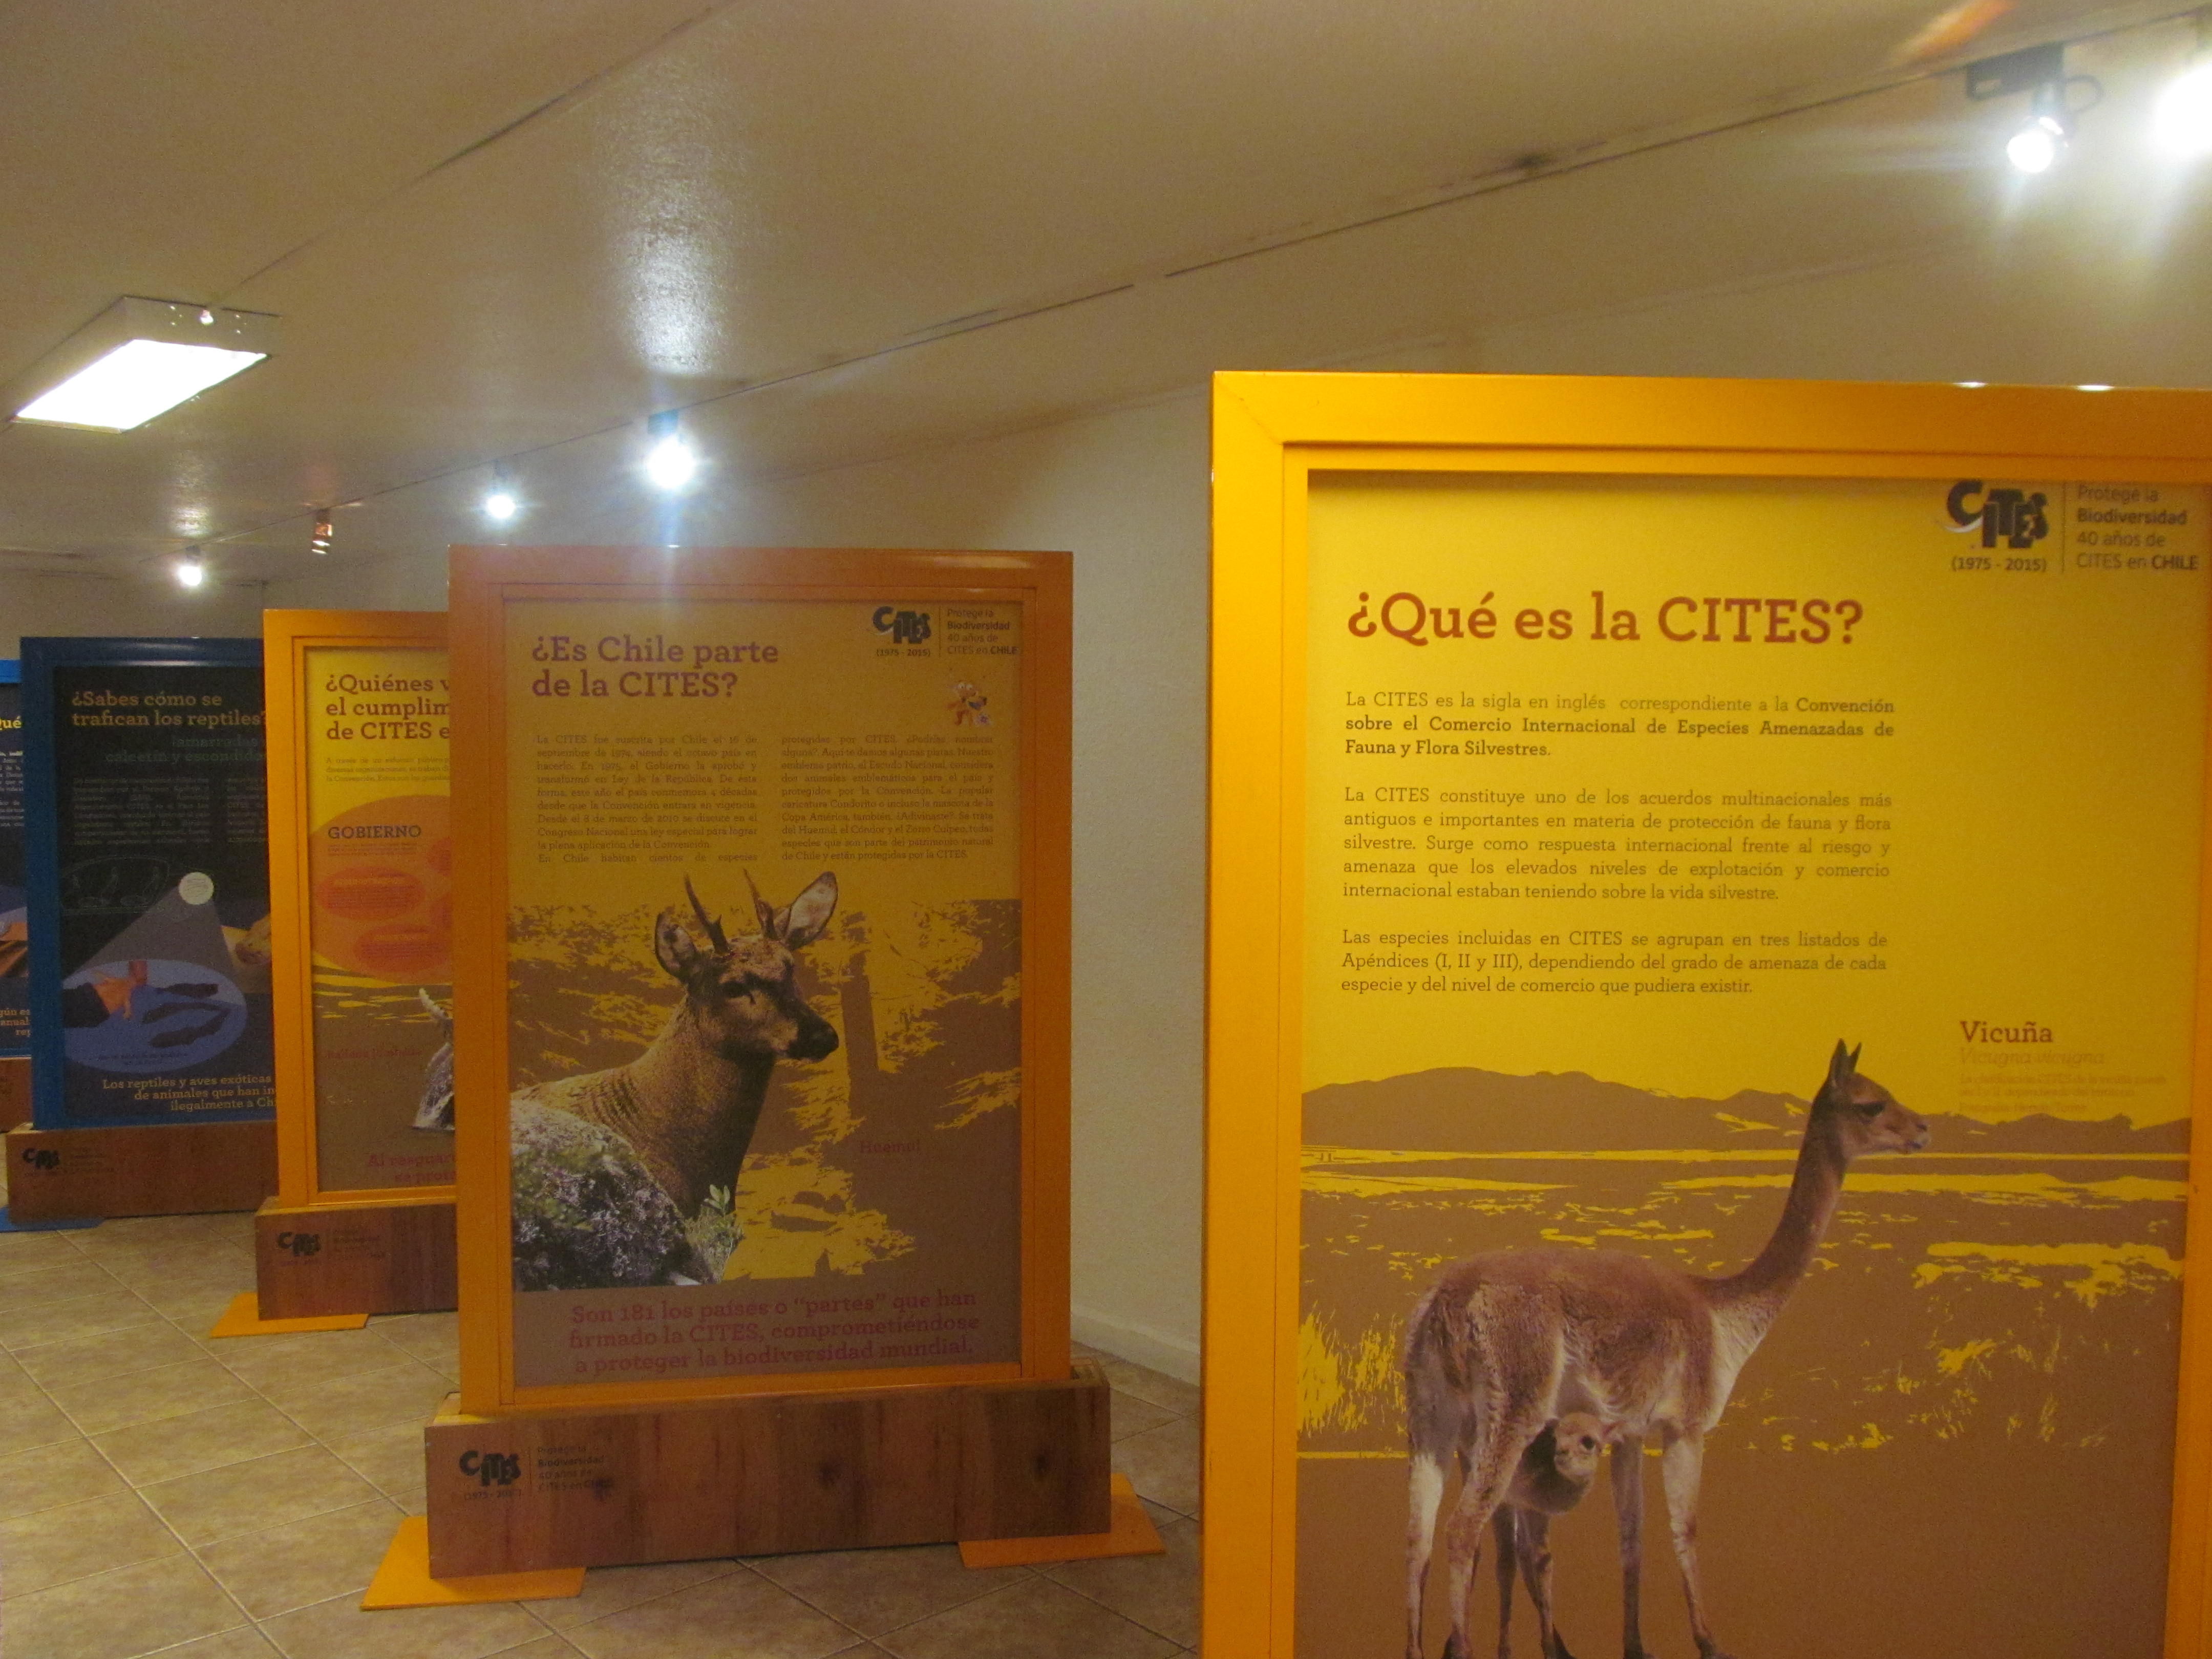 Educativa exposición CITES se presenta en Talca